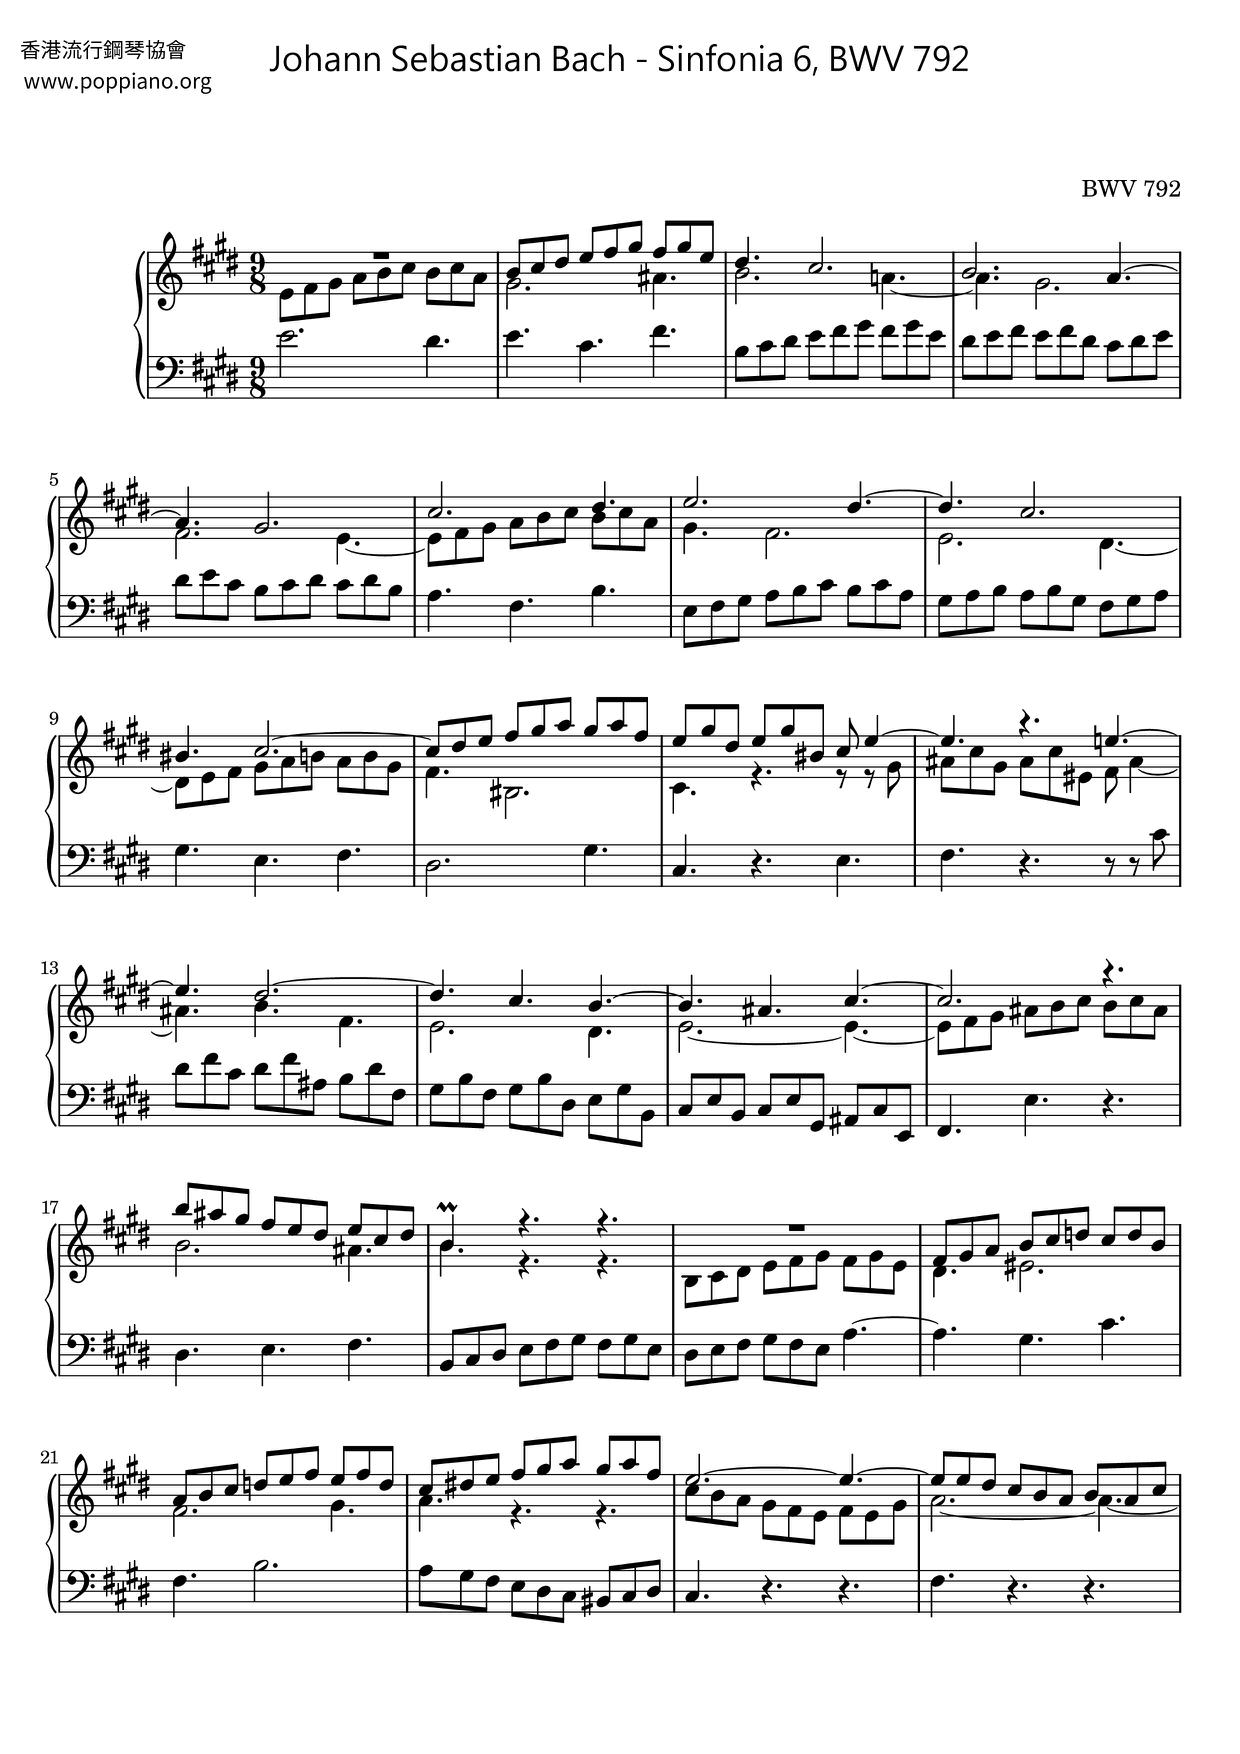 Sinfonia 6, BWV 792ピアノ譜